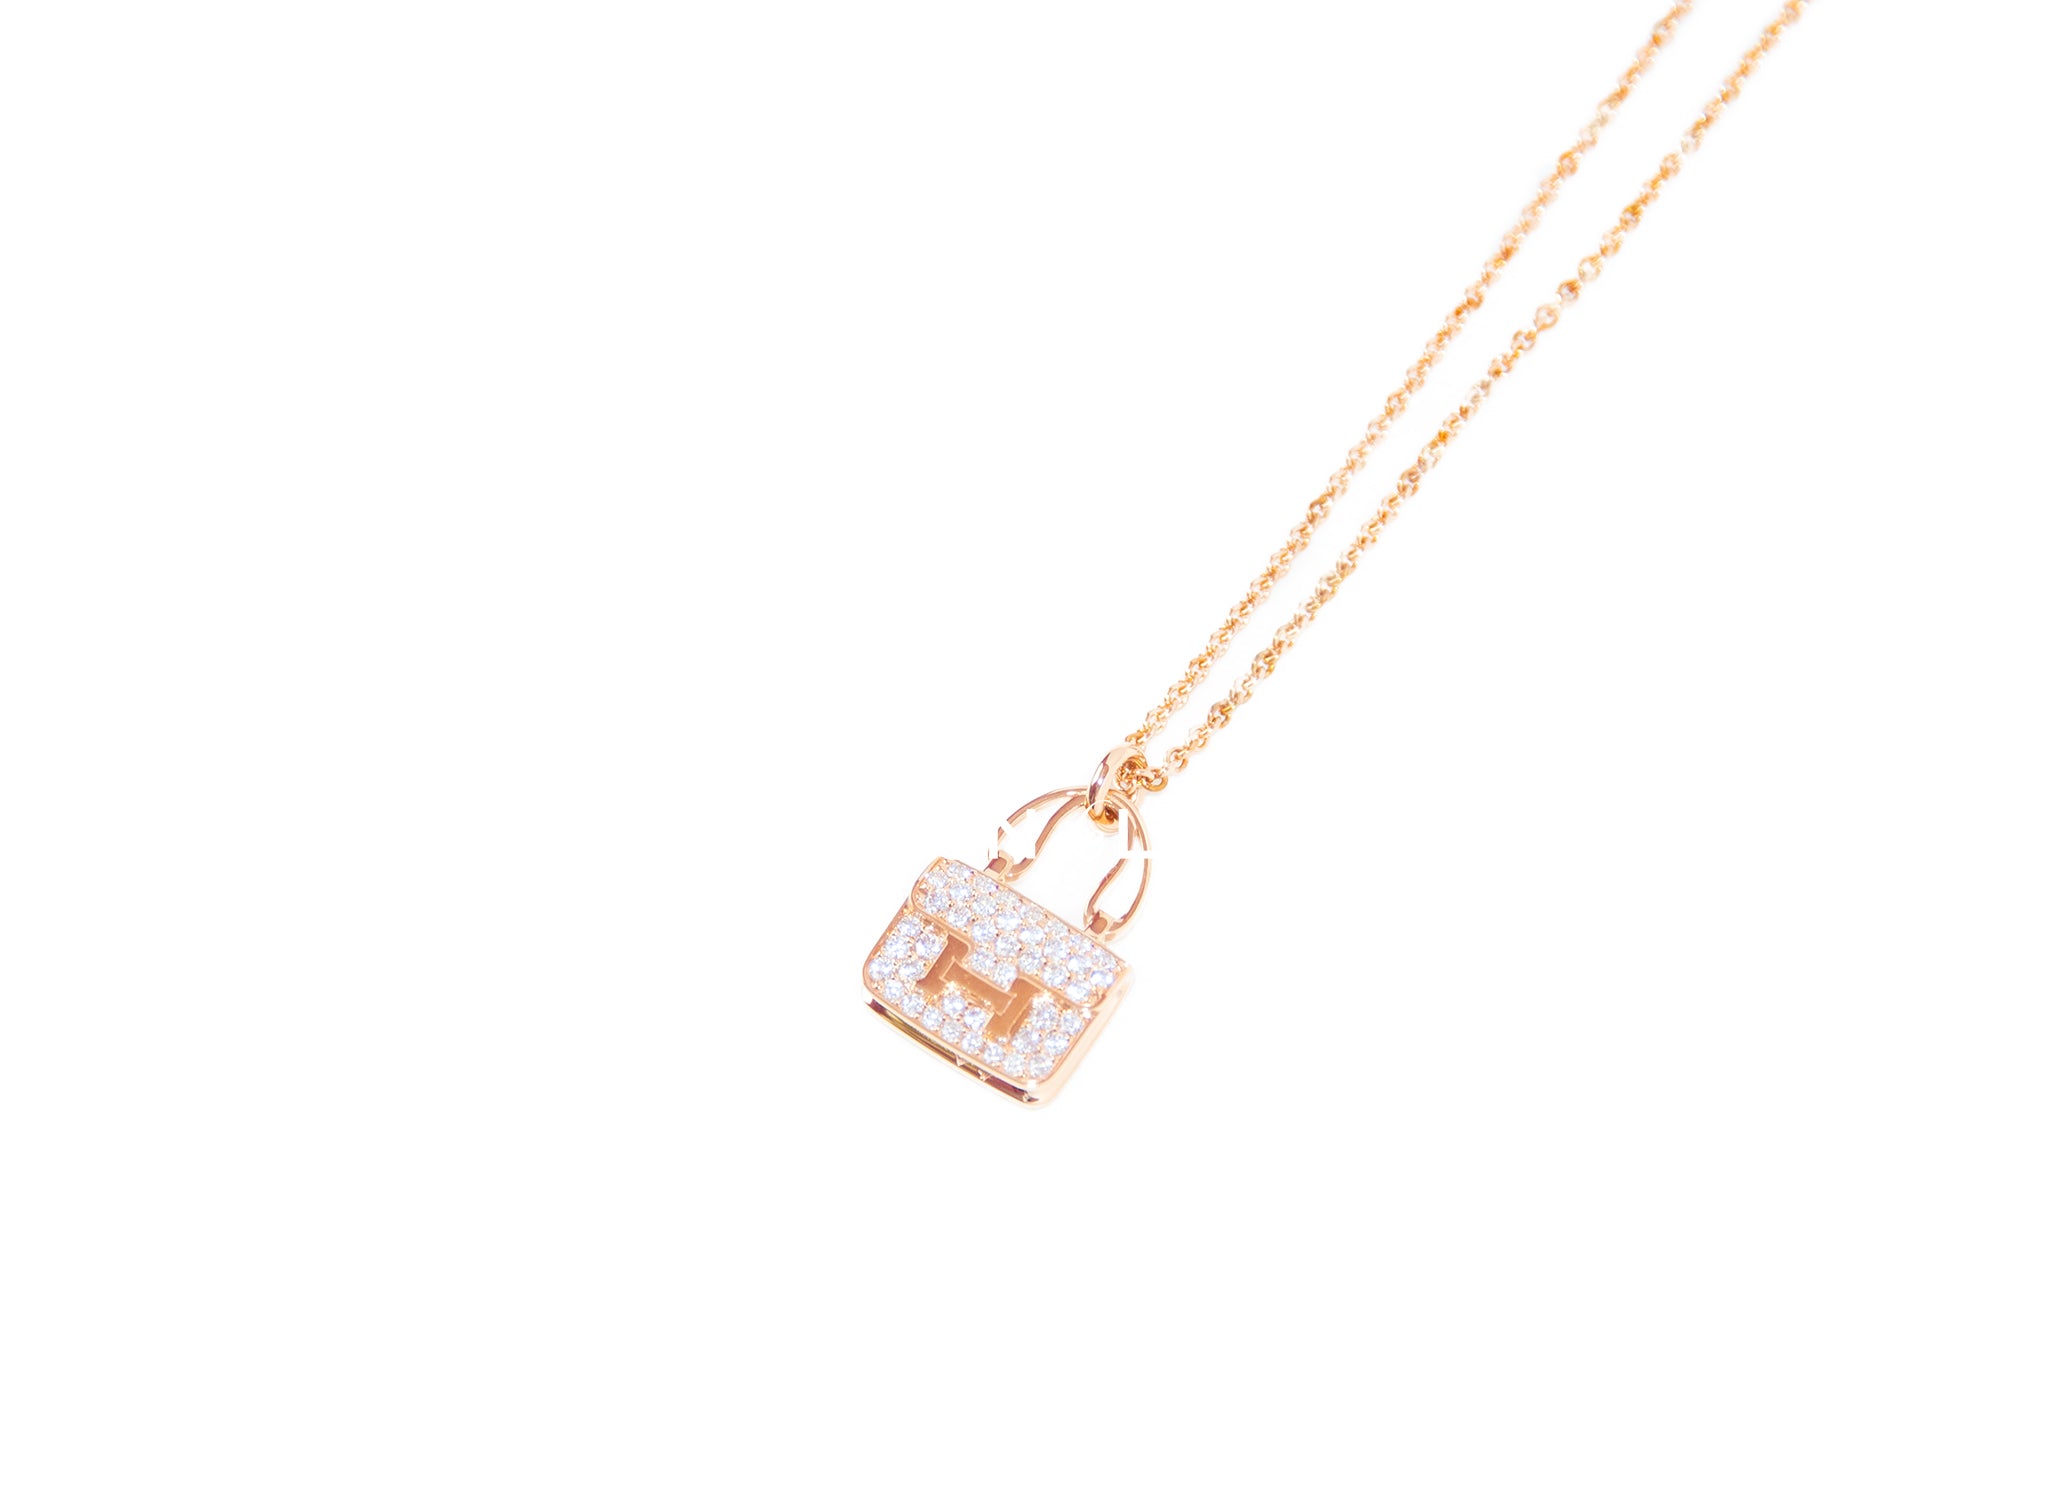 Rare! Authentic Hermes 18K Rose Gold Diamond Constance Amulette Pendant Necklace